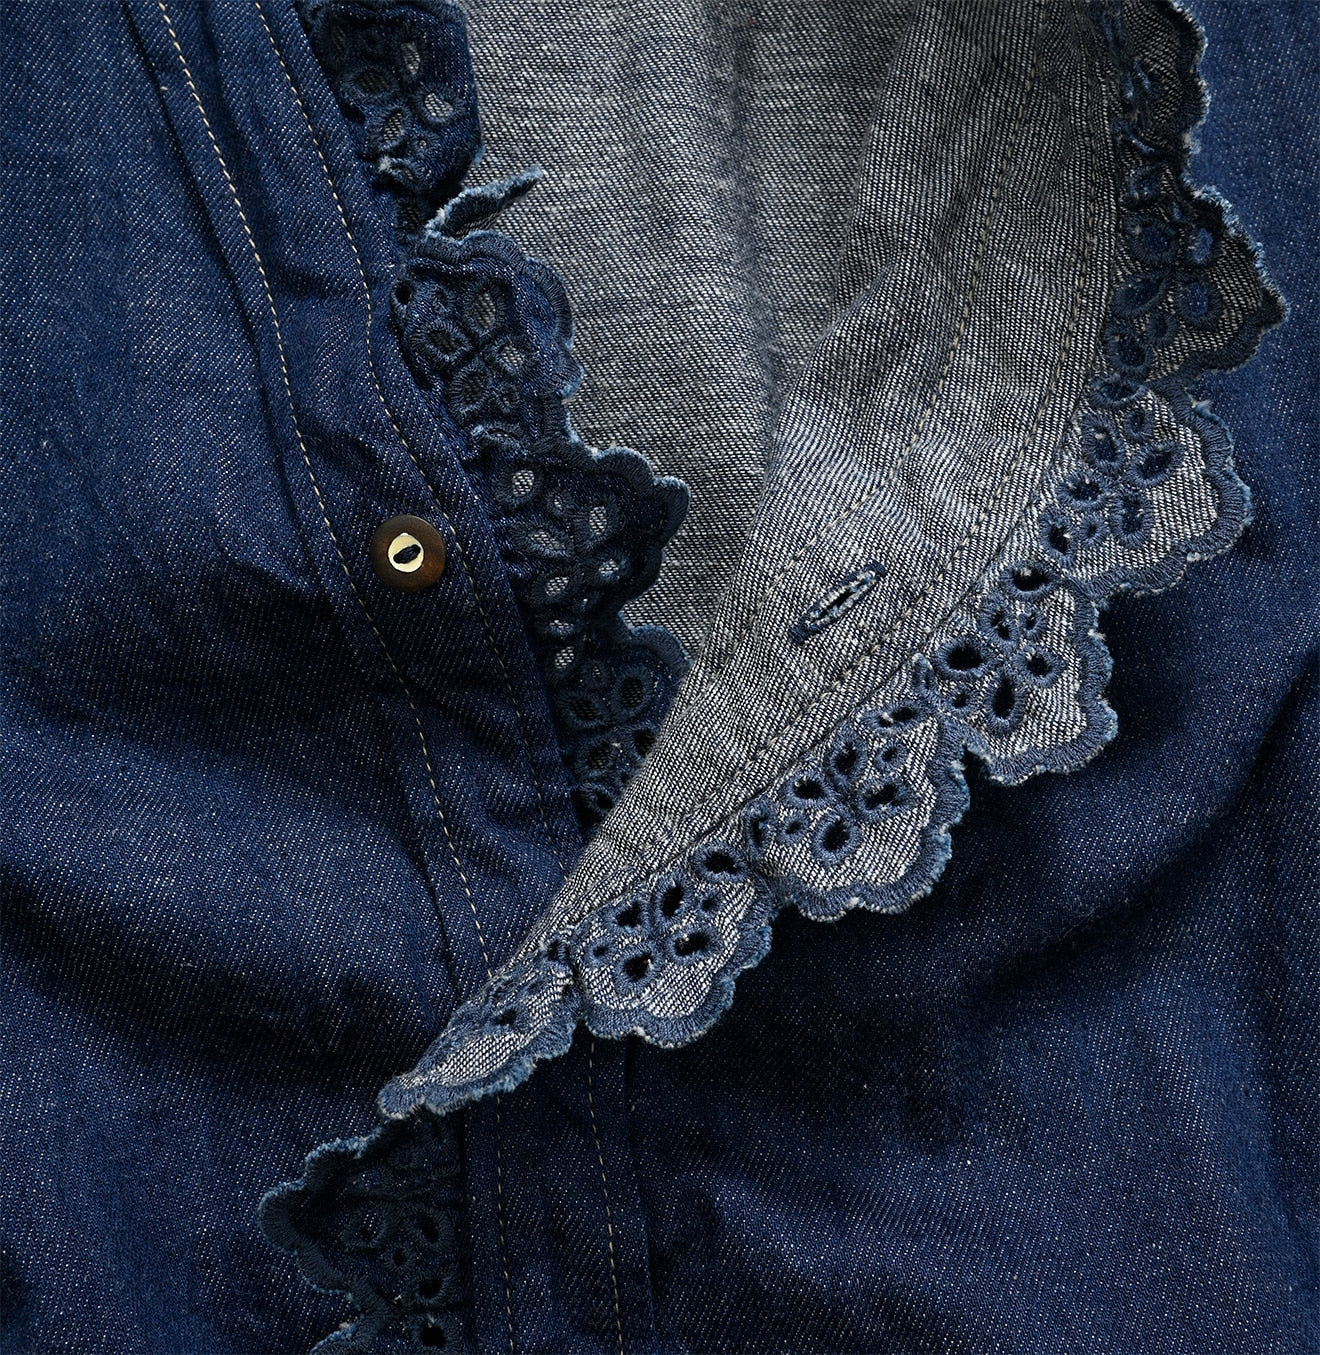 Shirt Denim Cutwork Frilled Dress